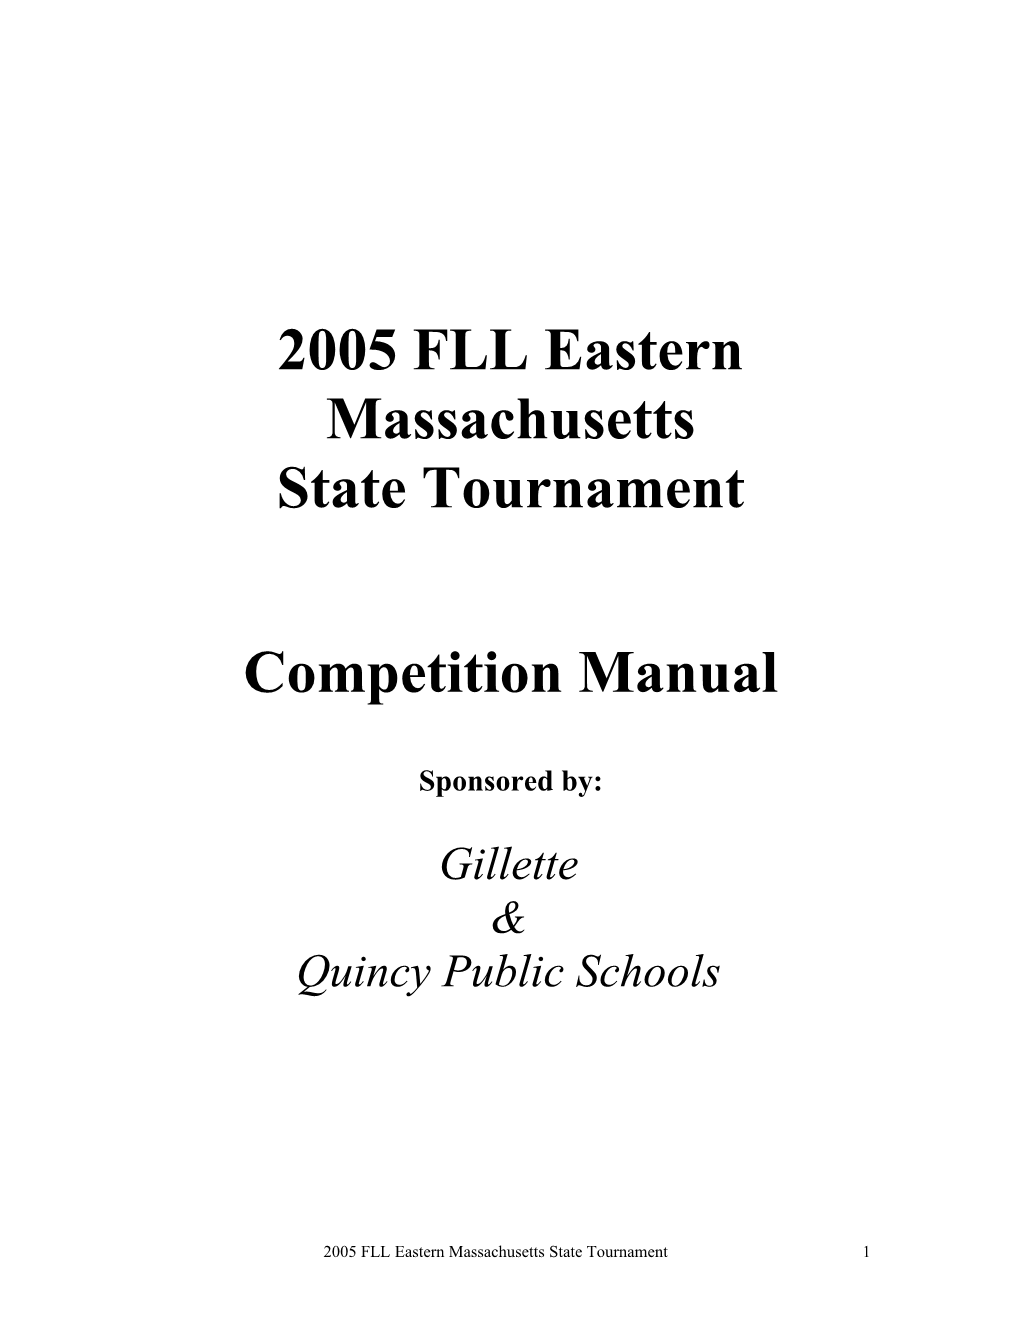 2002 FLL Eastern Massachusetts